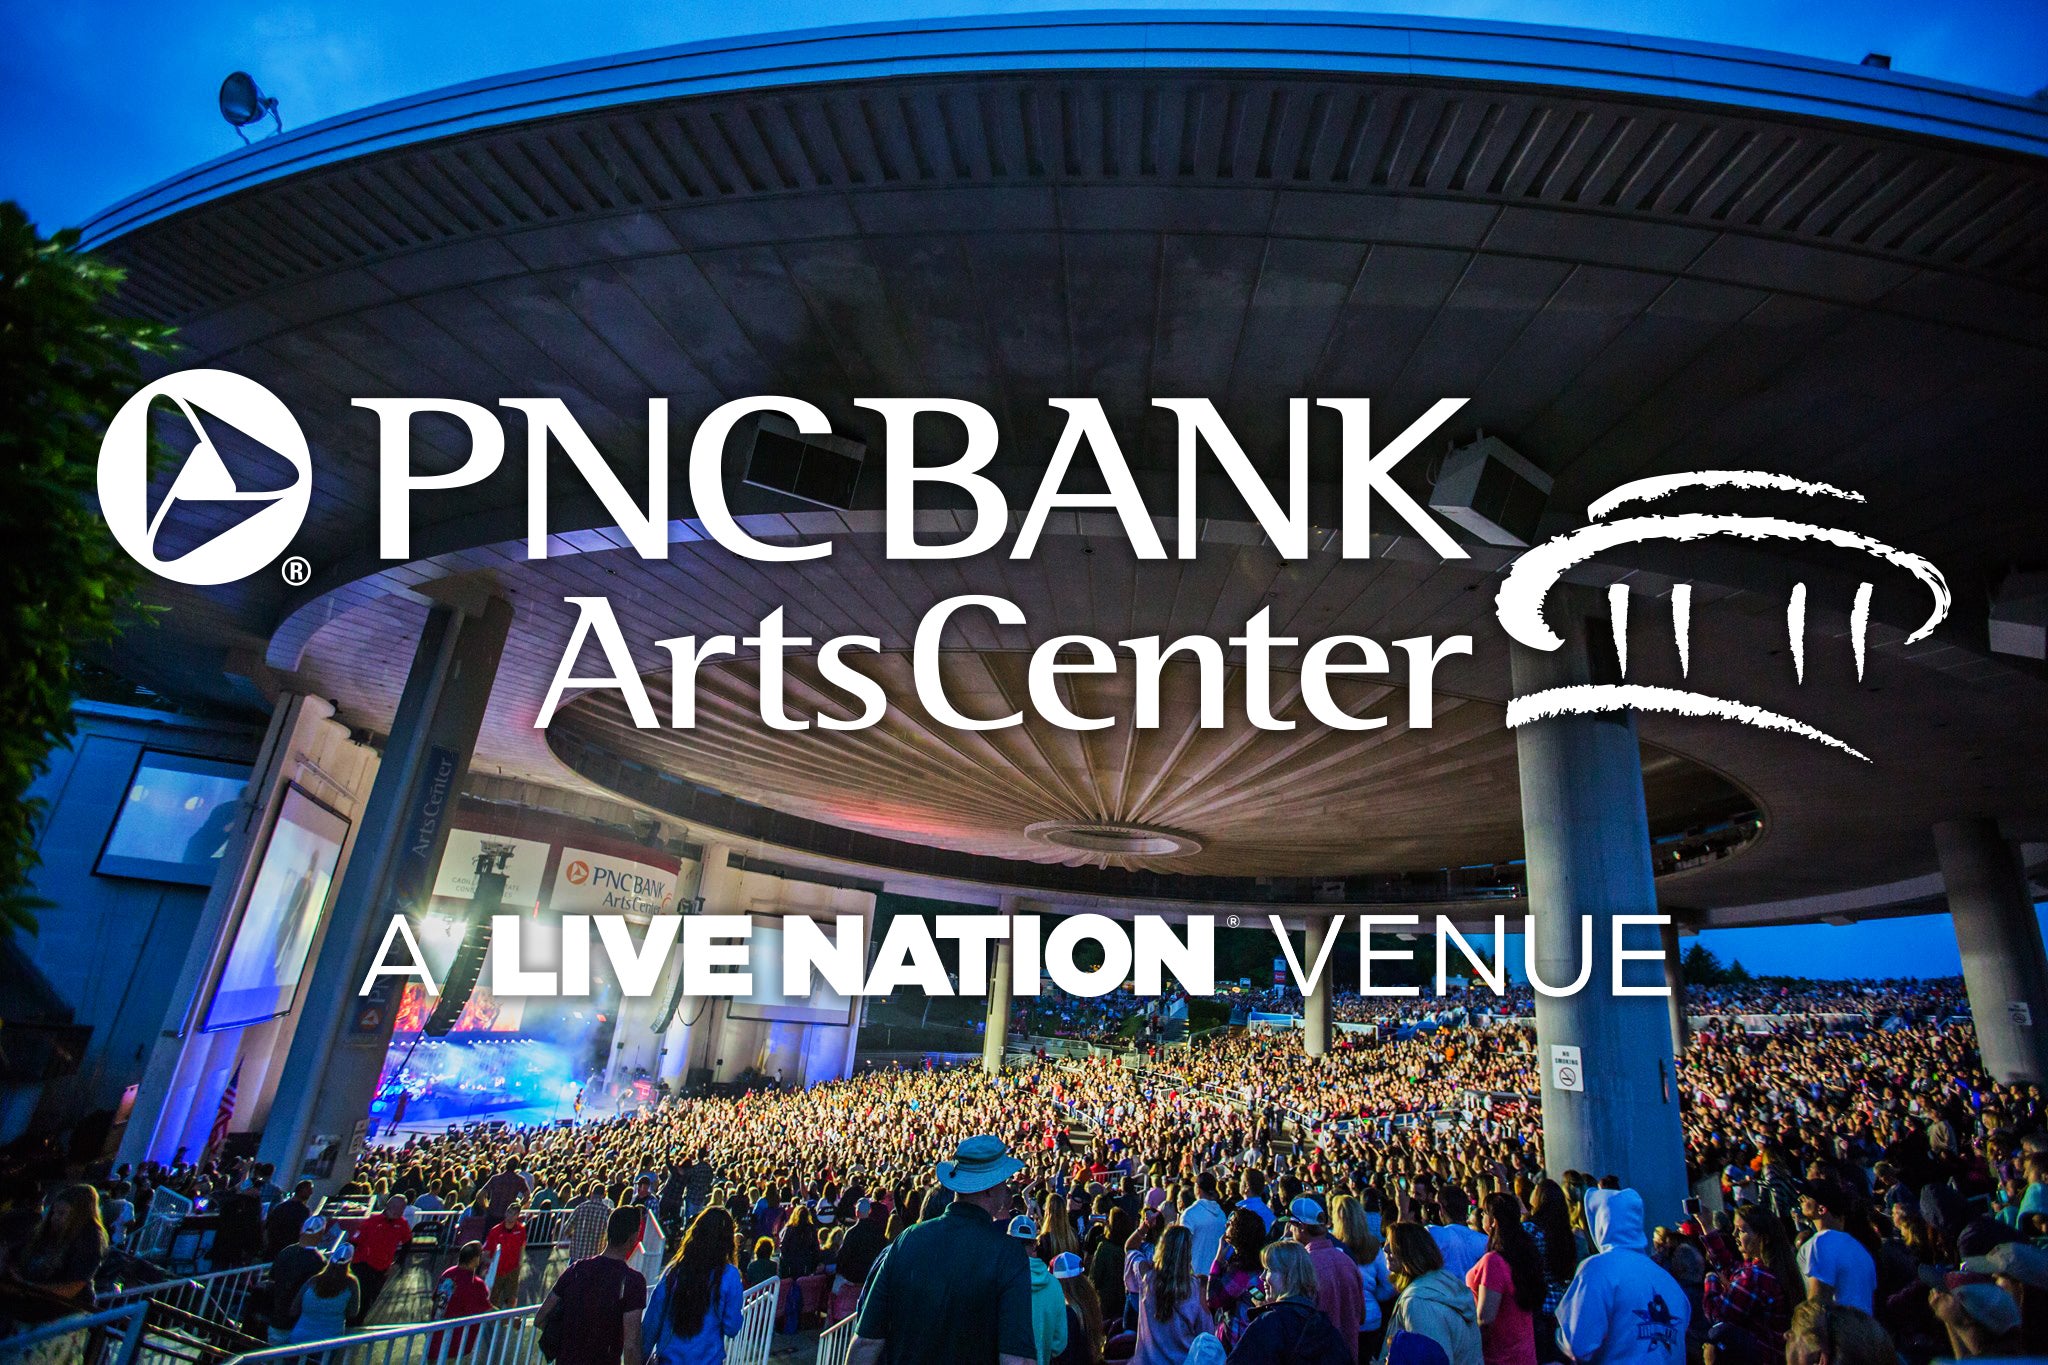 Pnc Bank Arts Center 2020 Show Schedule Venue Information